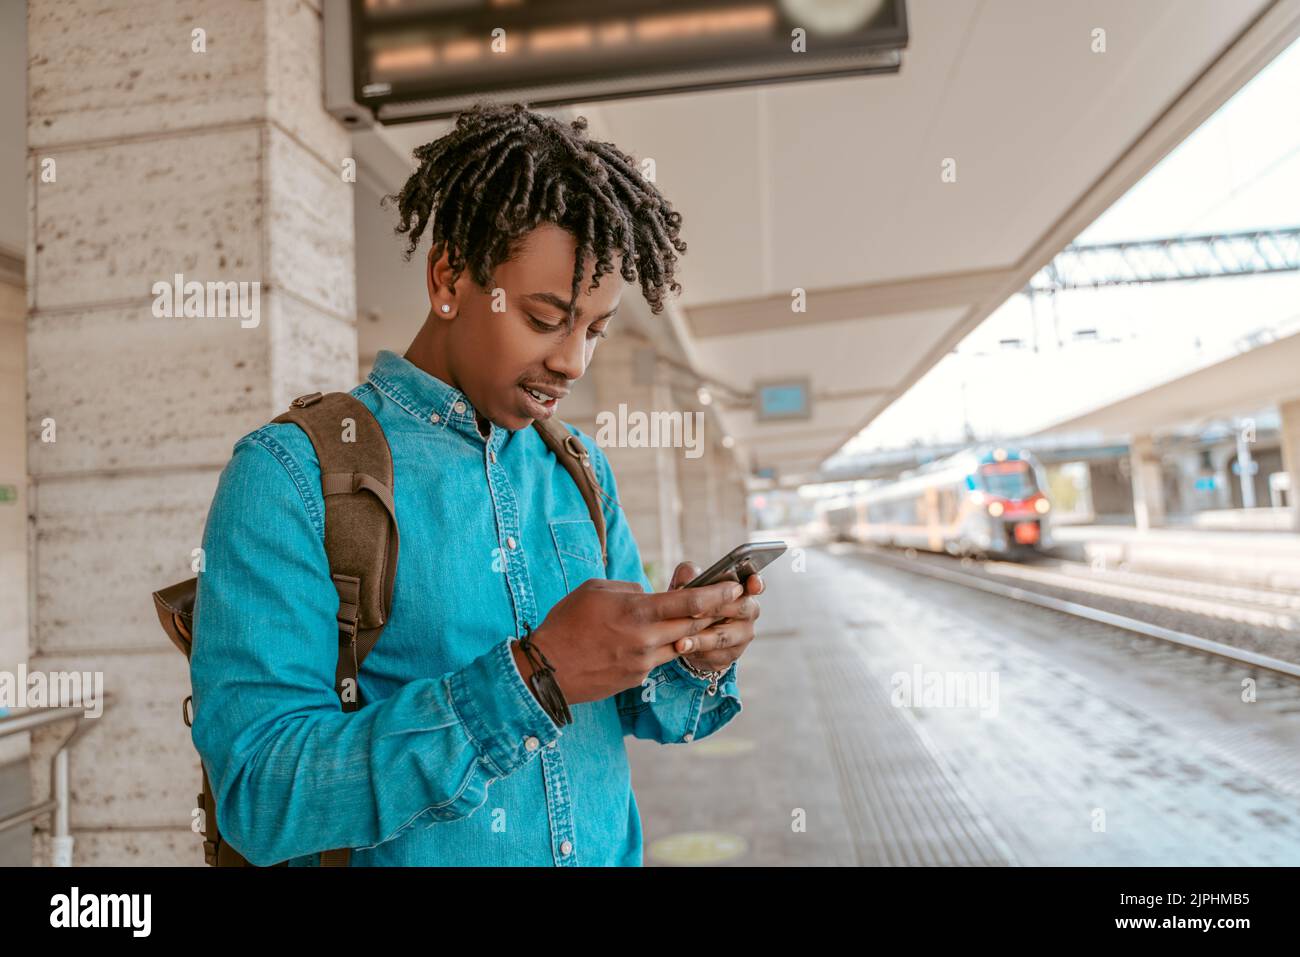 Hombre parado en la plataforma de ferrocarril mirando el smartphone Foto de stock